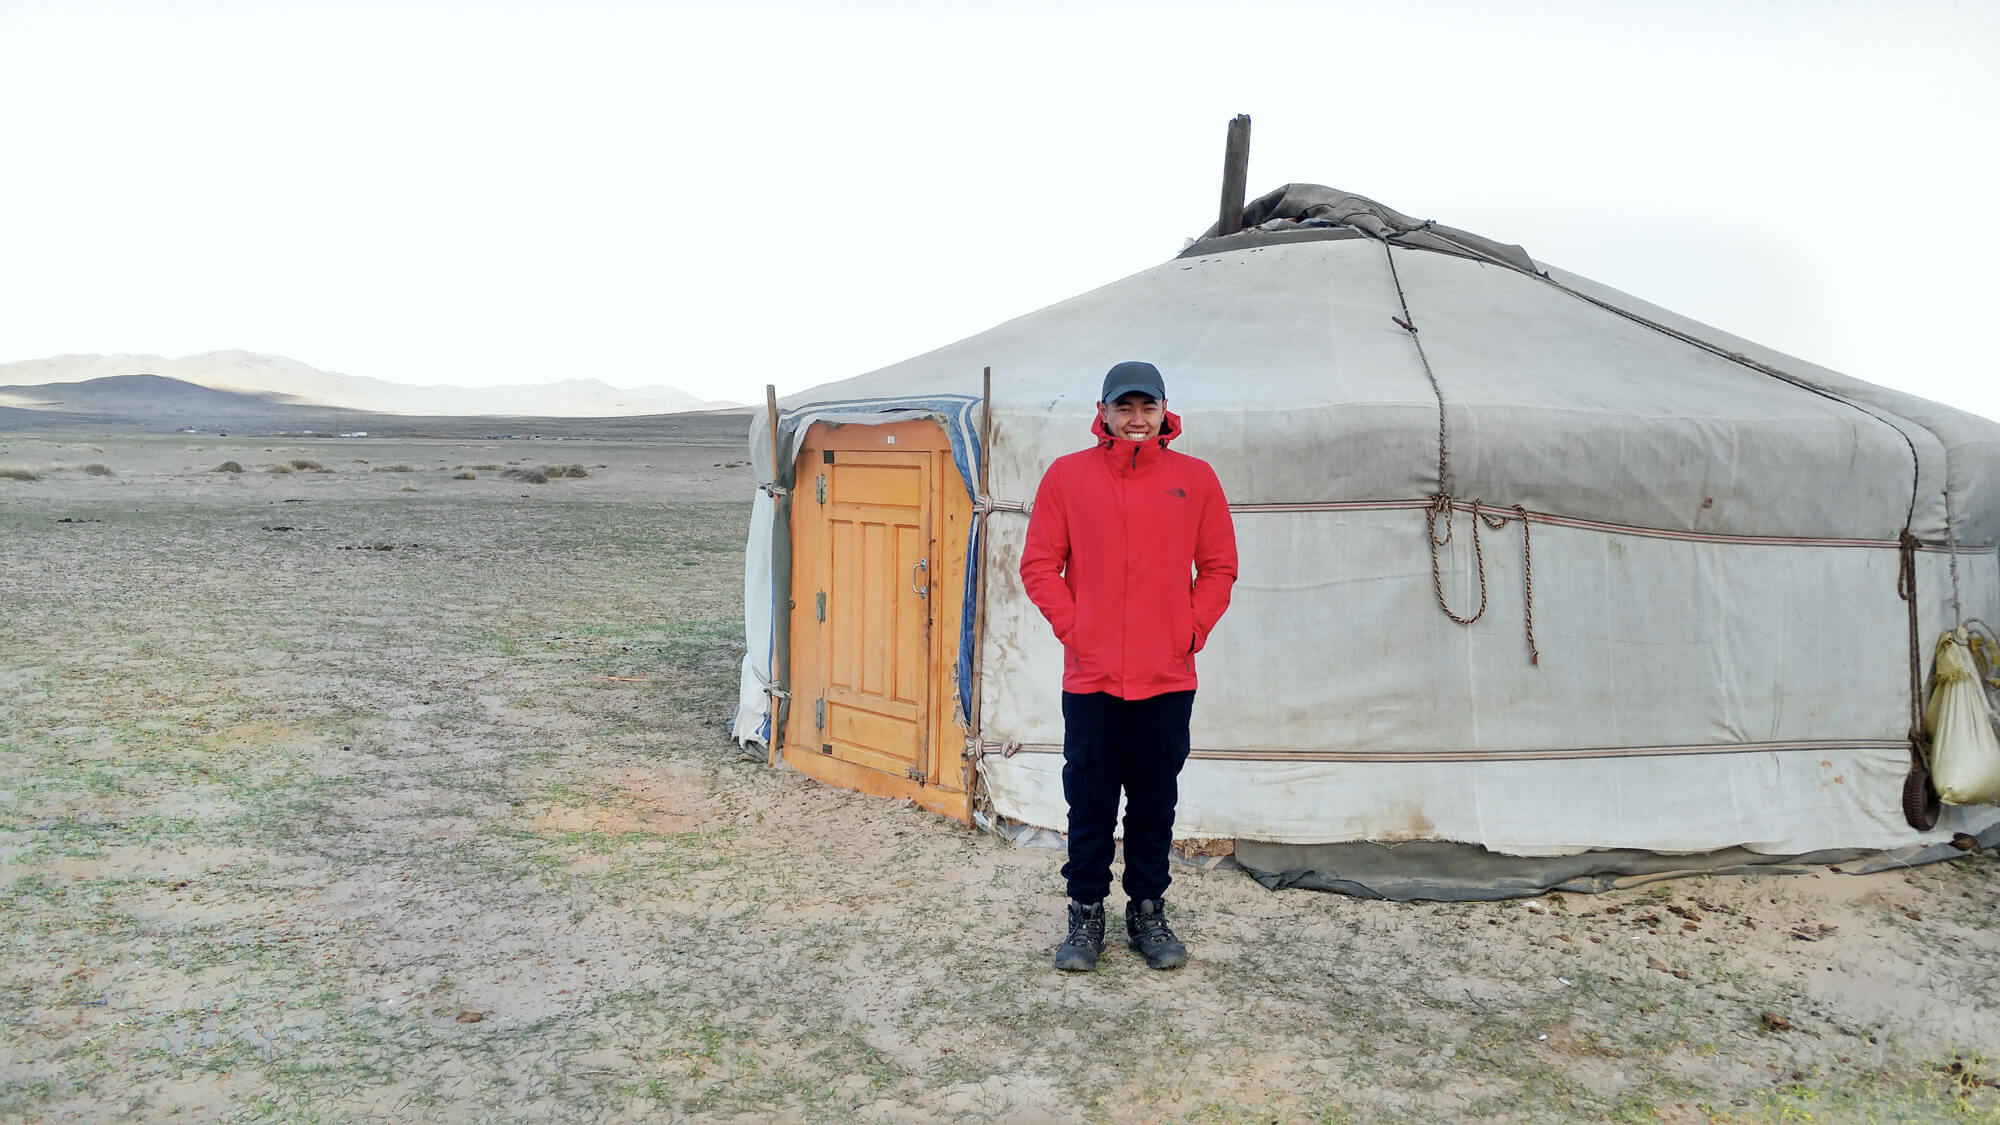 Kervin Tan in Mongolia